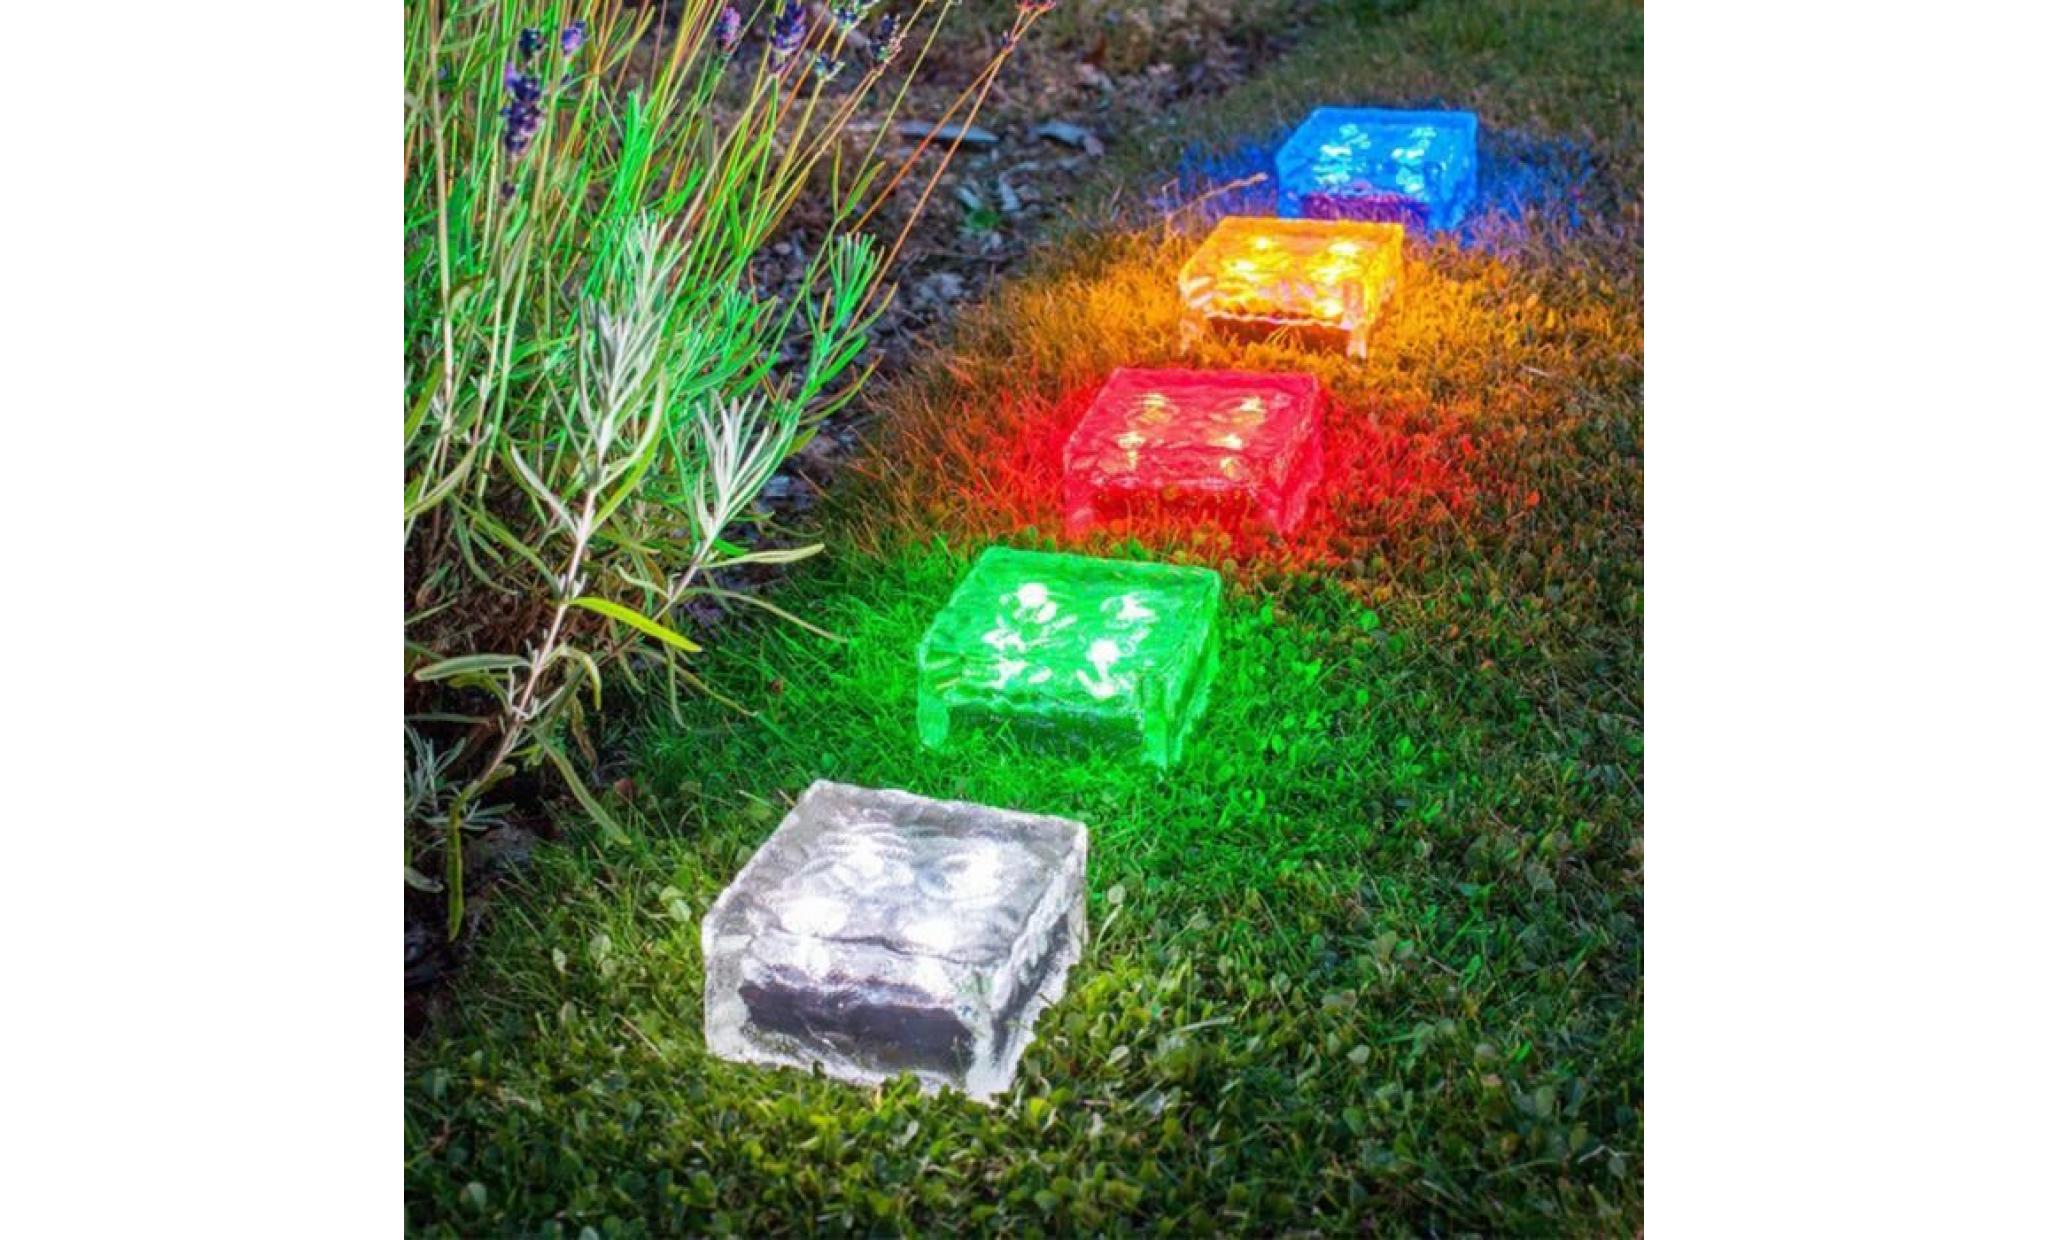 borne solaire solaire imperméable à l'eau led rock light path jardin ice cube brick decor #pa 304 pas cher